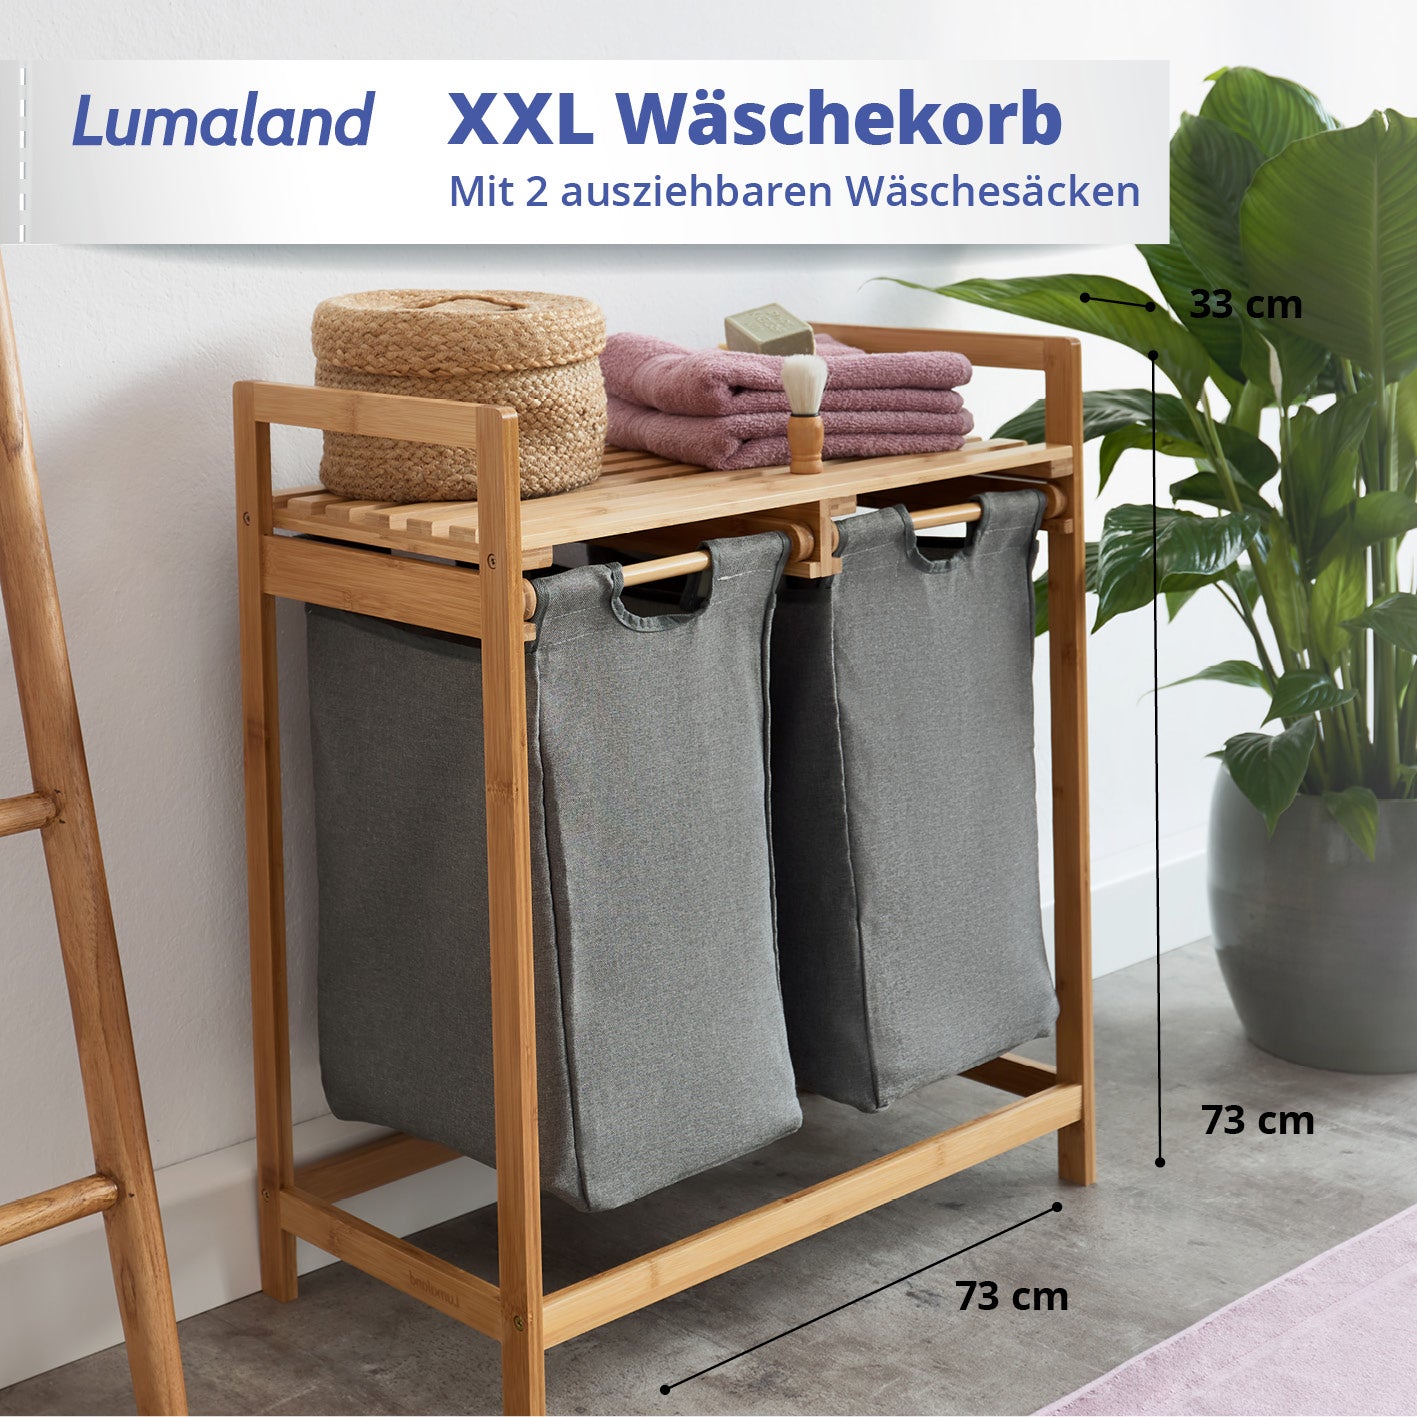 Bambus Wäschekorb mit 2 ausziehbaren Wäschesacken - 73 x 64 x 33 cm - Dunkelgrau